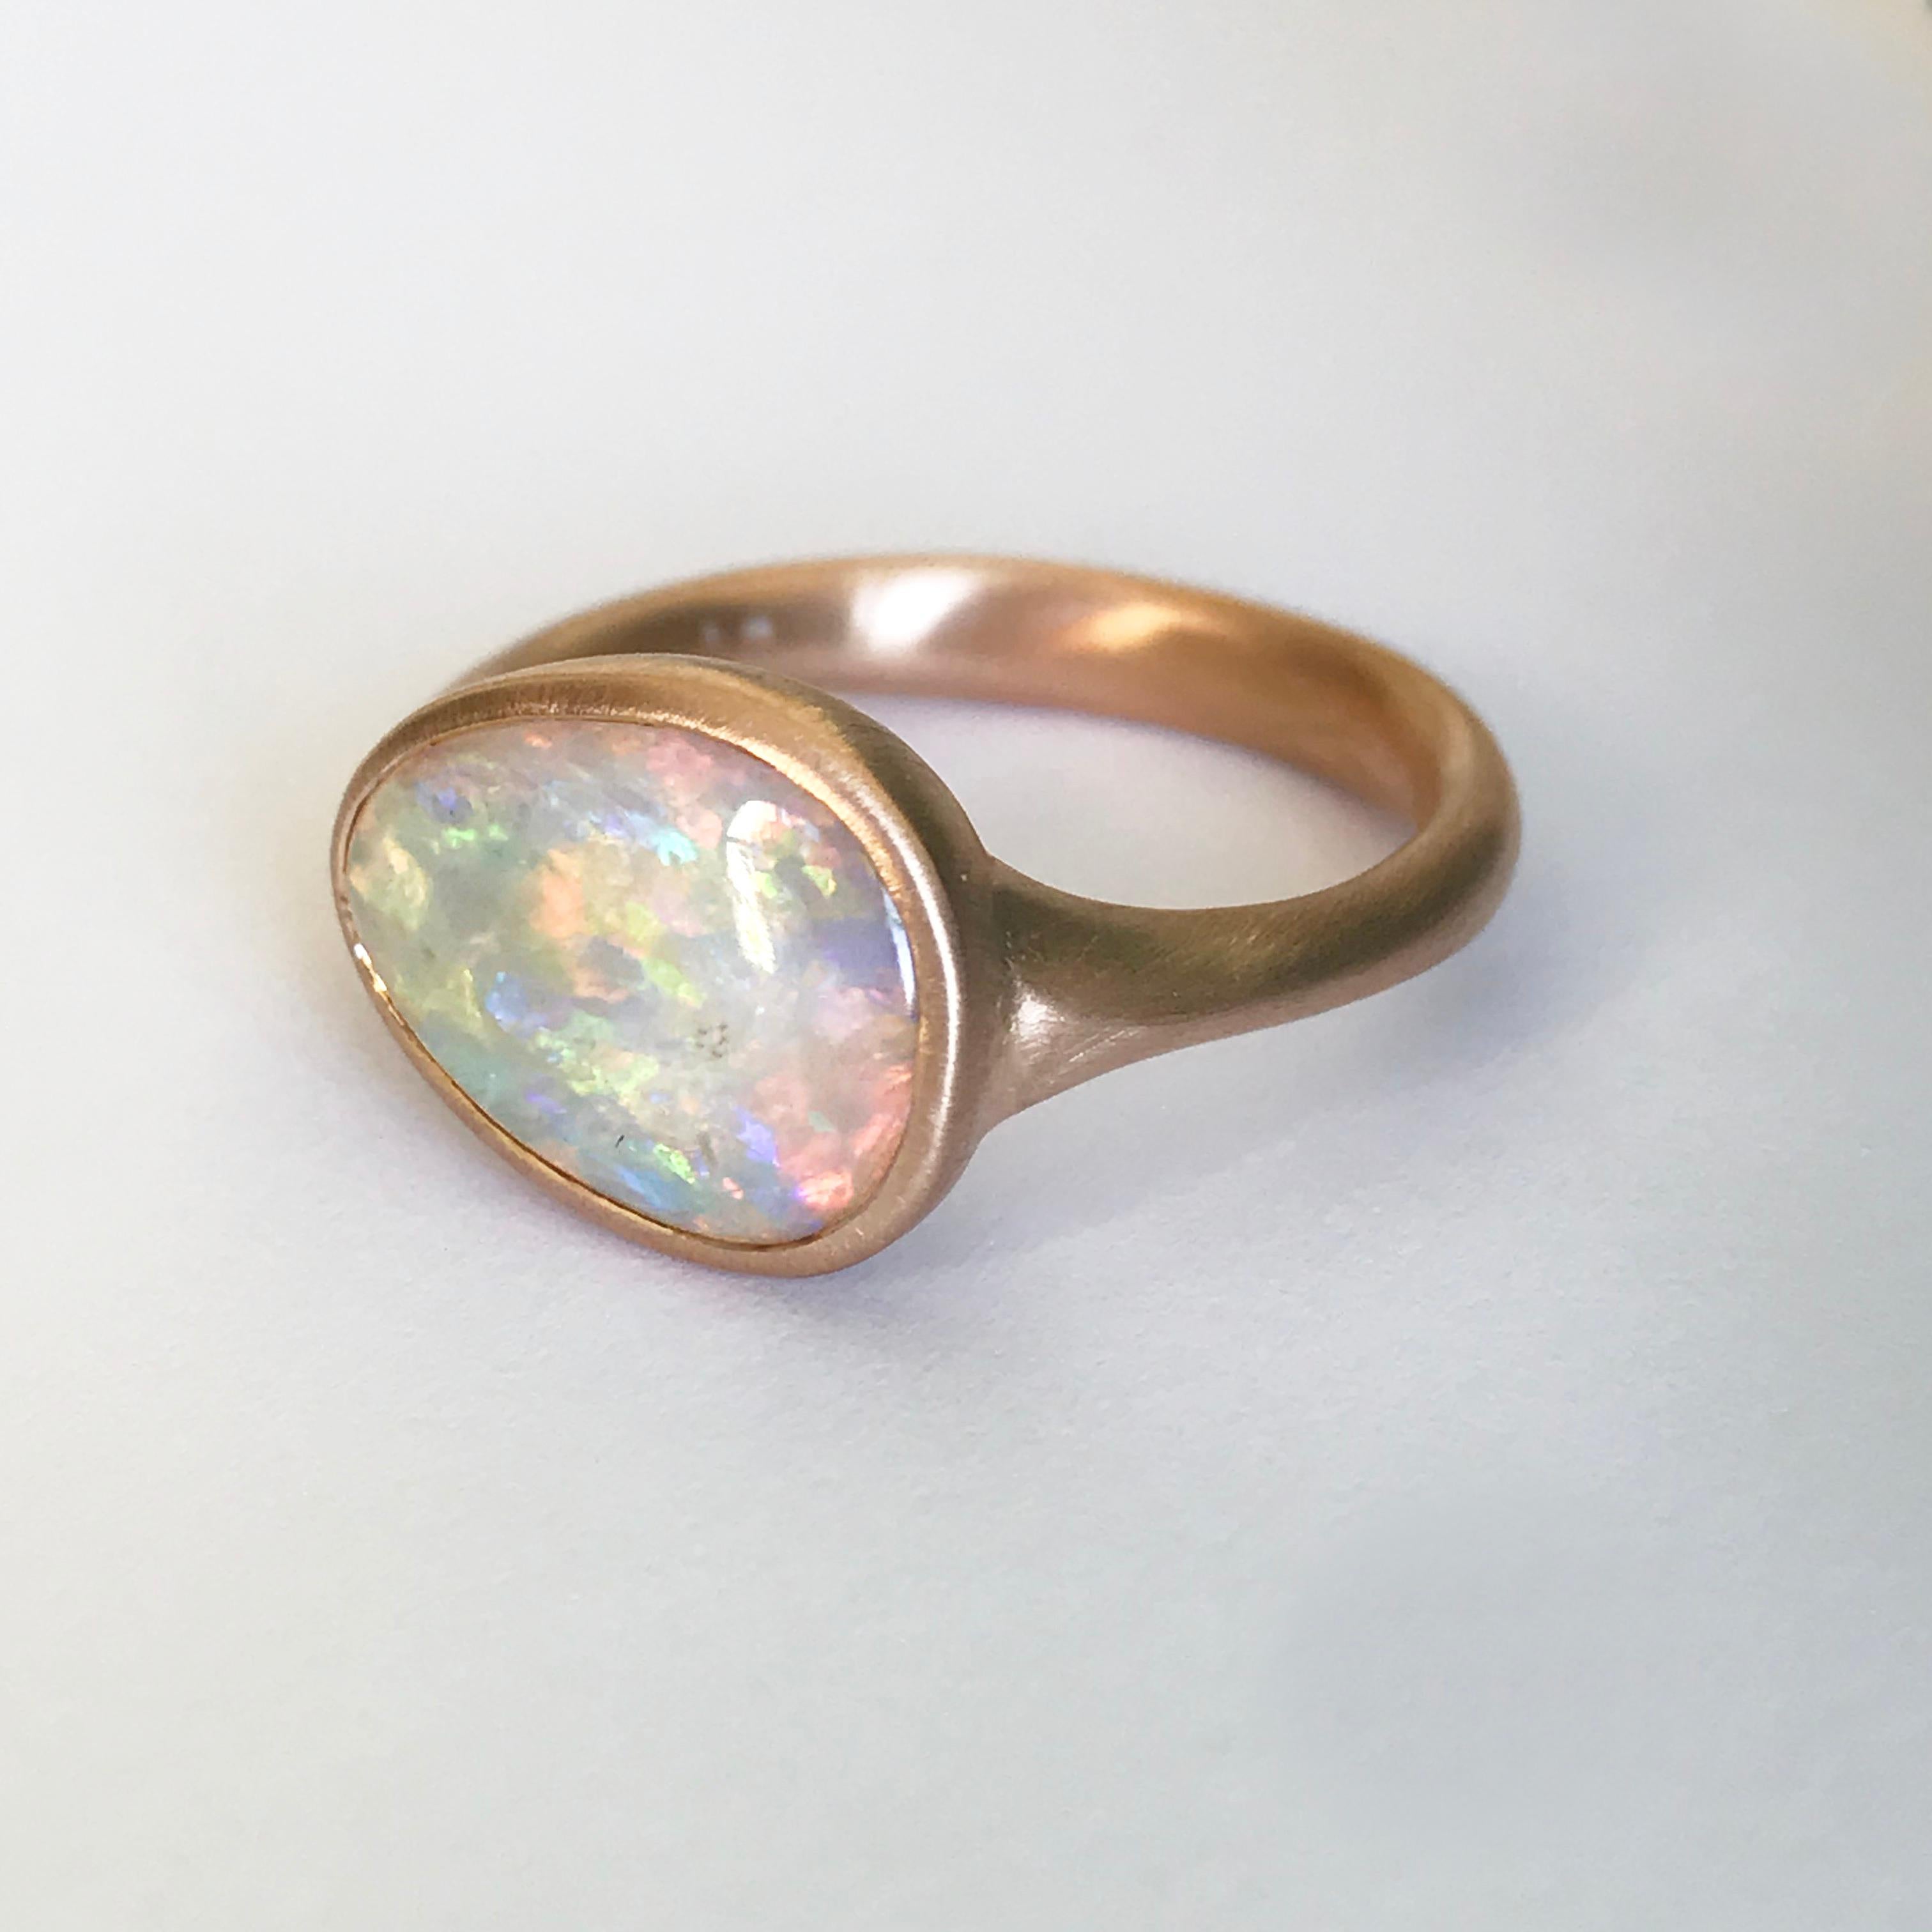 Dalben Lightning Ridge Australian Crystal Opal Rose Gold Ring For Sale ...